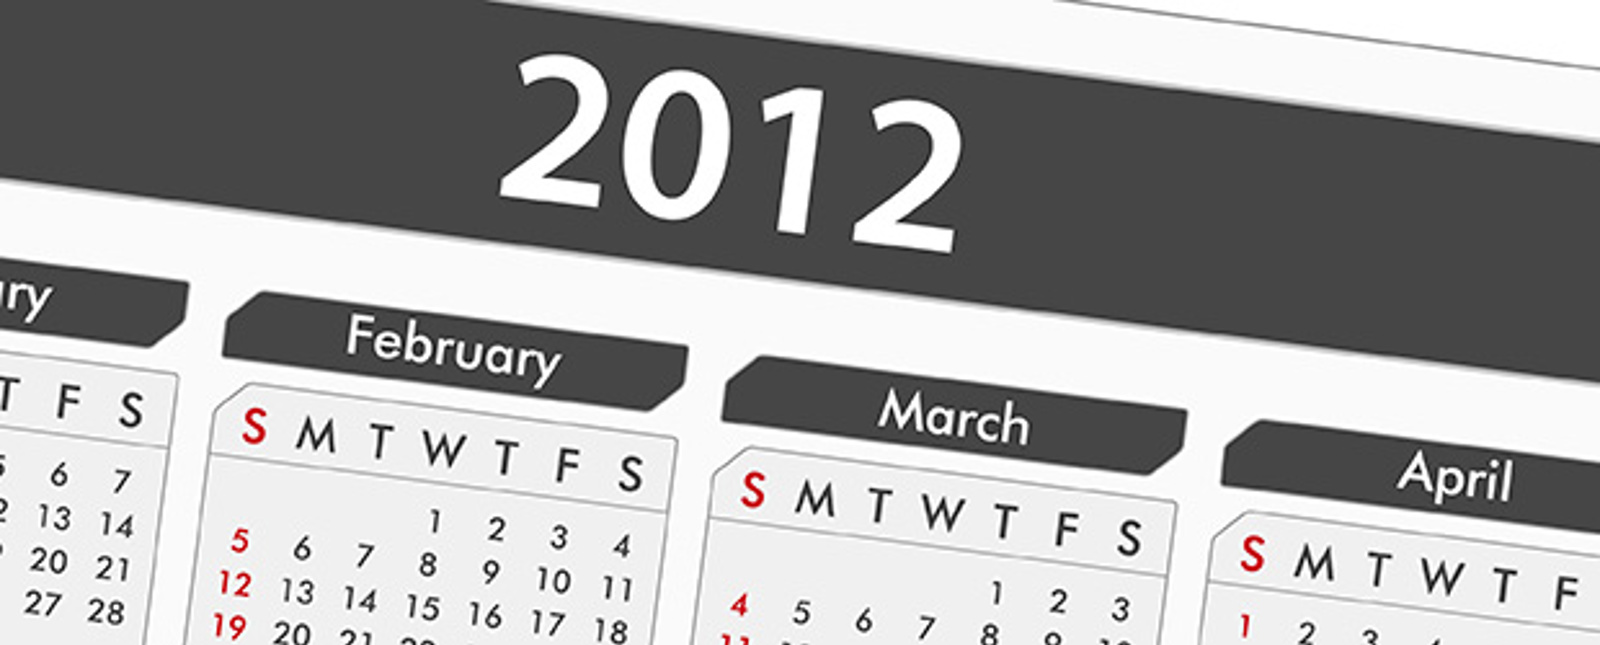 kalender från 2012